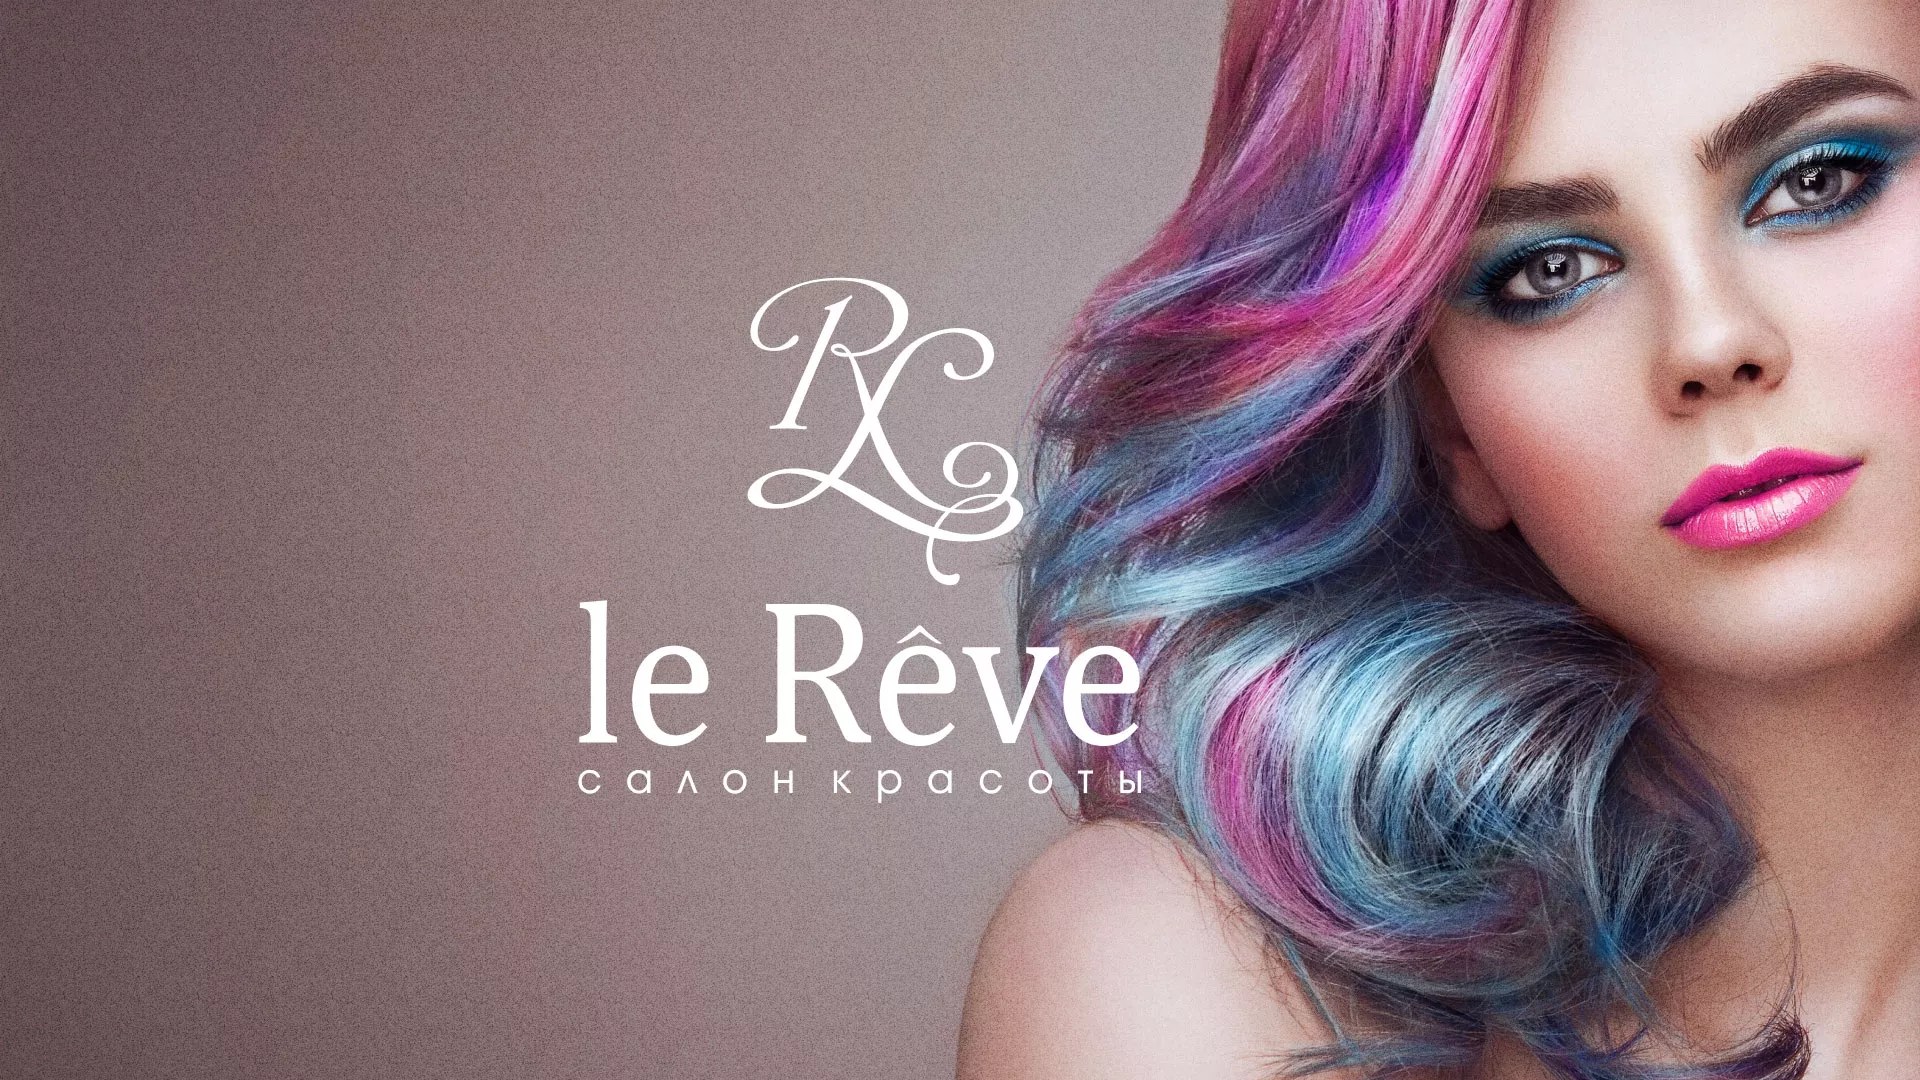 Создание сайта для салона красоты «Le Reve» в Анжеро-Судженске